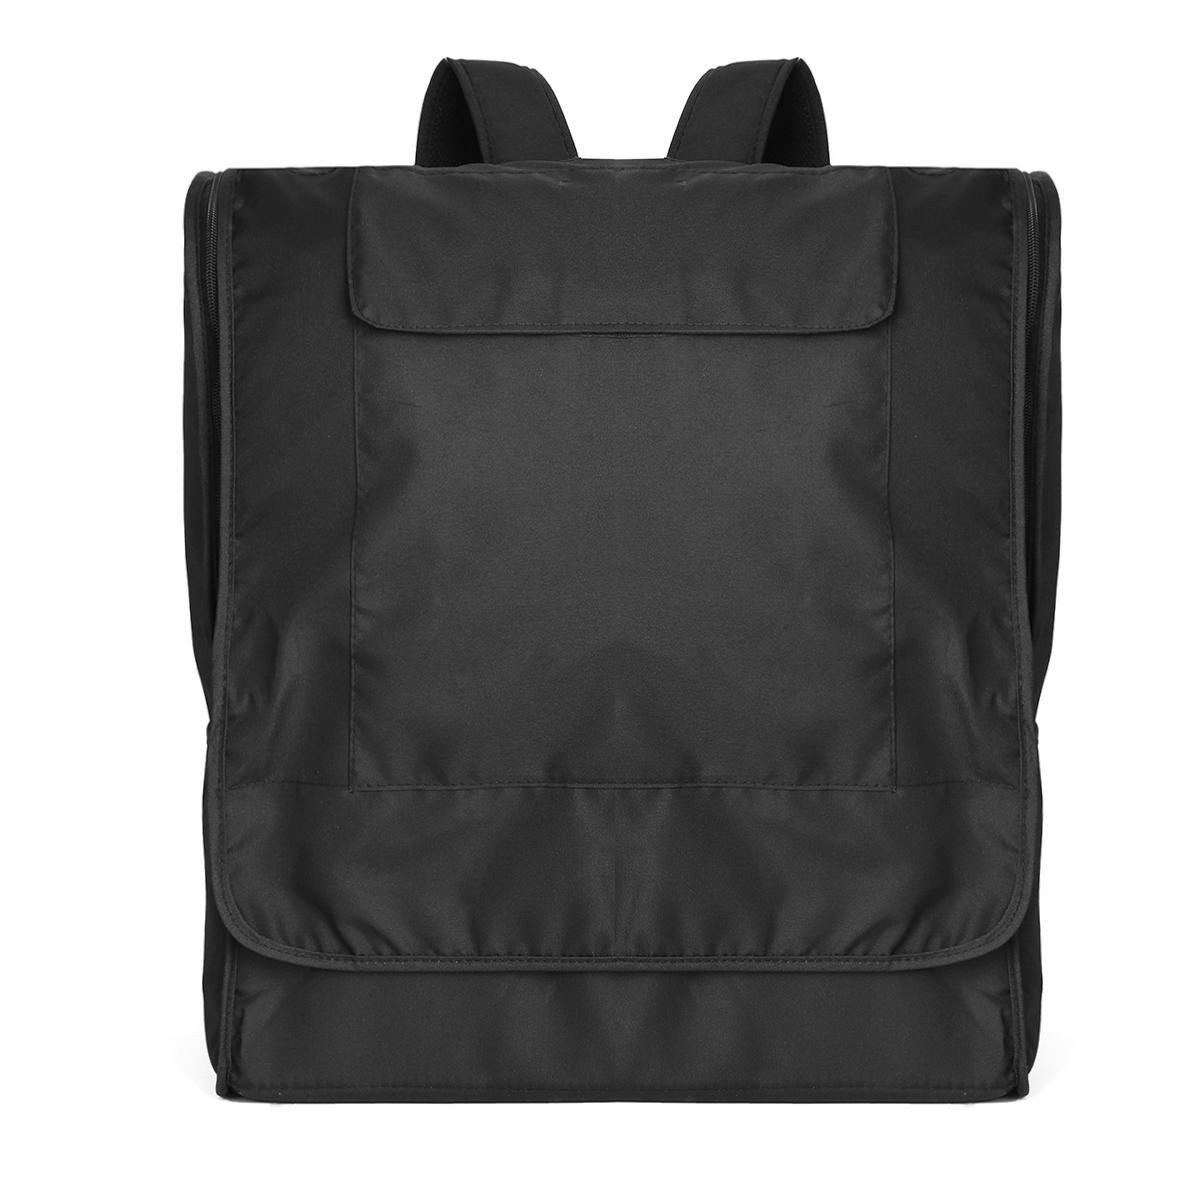 Oxford Stroller Storage Bag Travel Camping Baby Backpack Waterproof Shoulder Bag Handbag